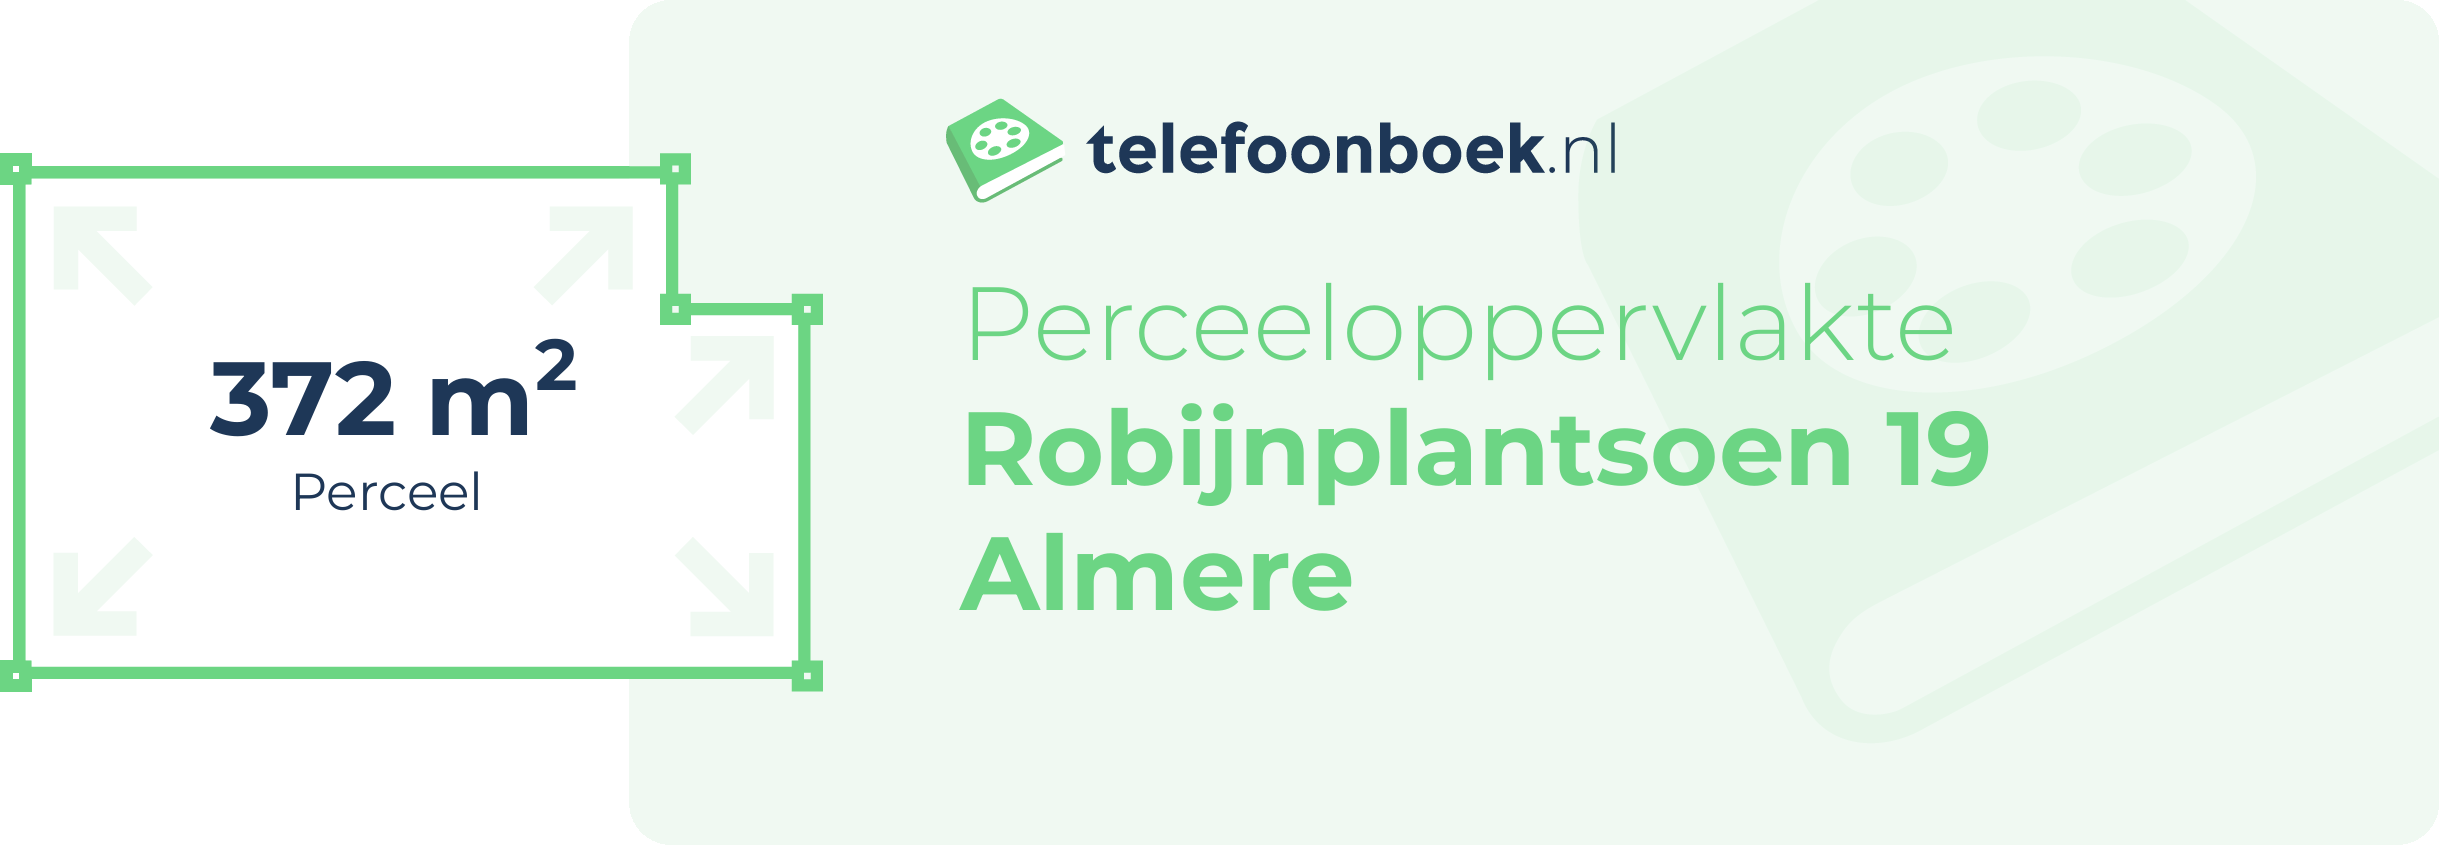 Perceeloppervlakte Robijnplantsoen 19 Almere